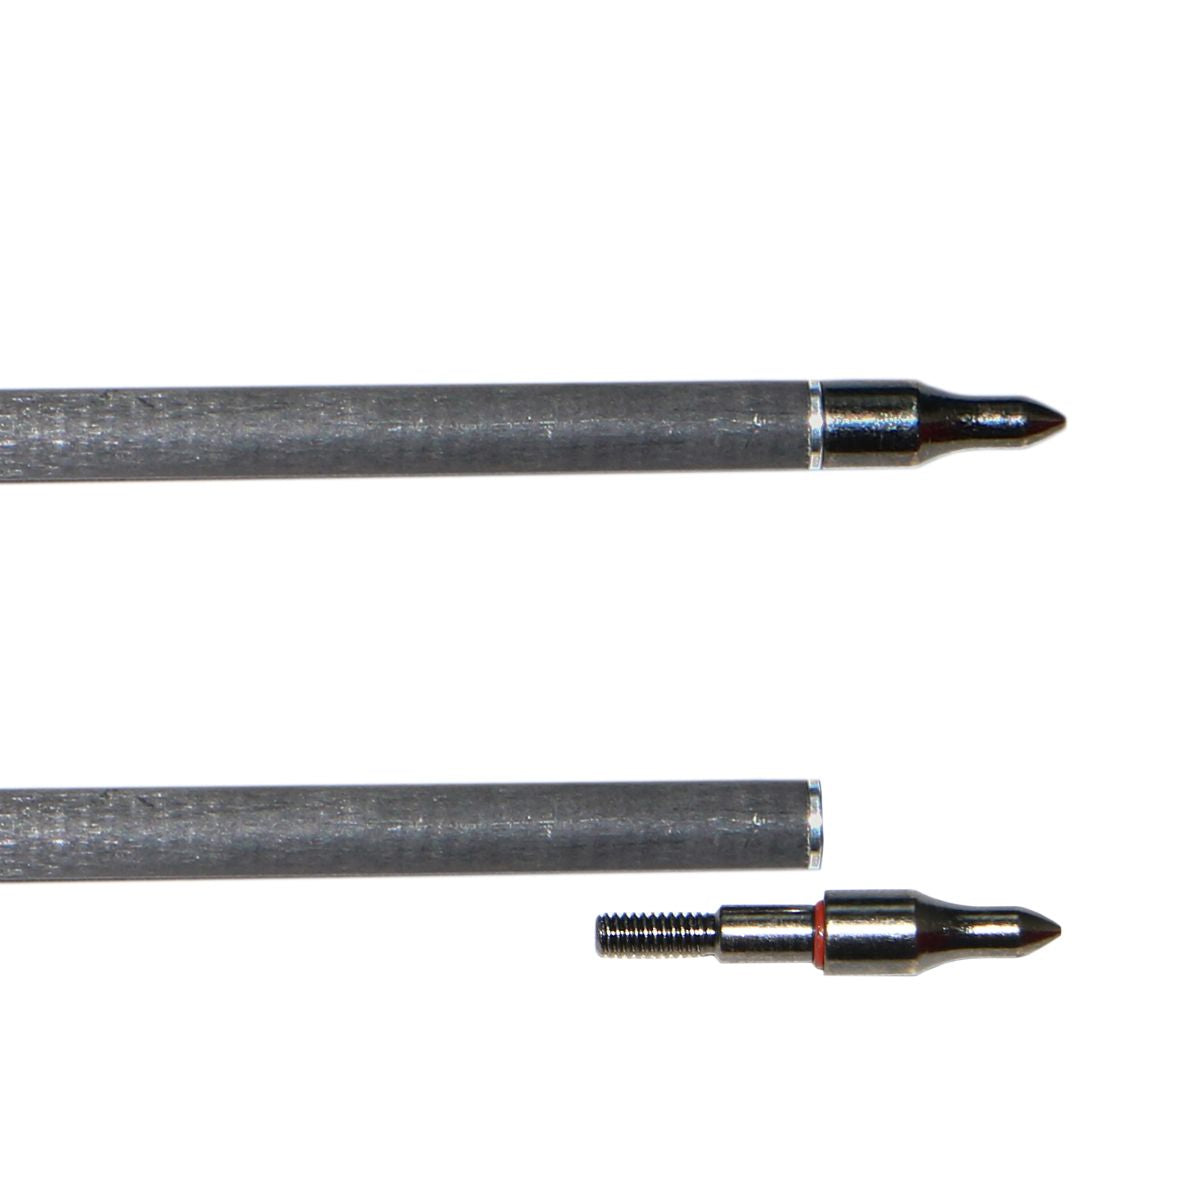 Rapid Carbon-Fibre Arrow Set - ACFA-02 - X-5 3